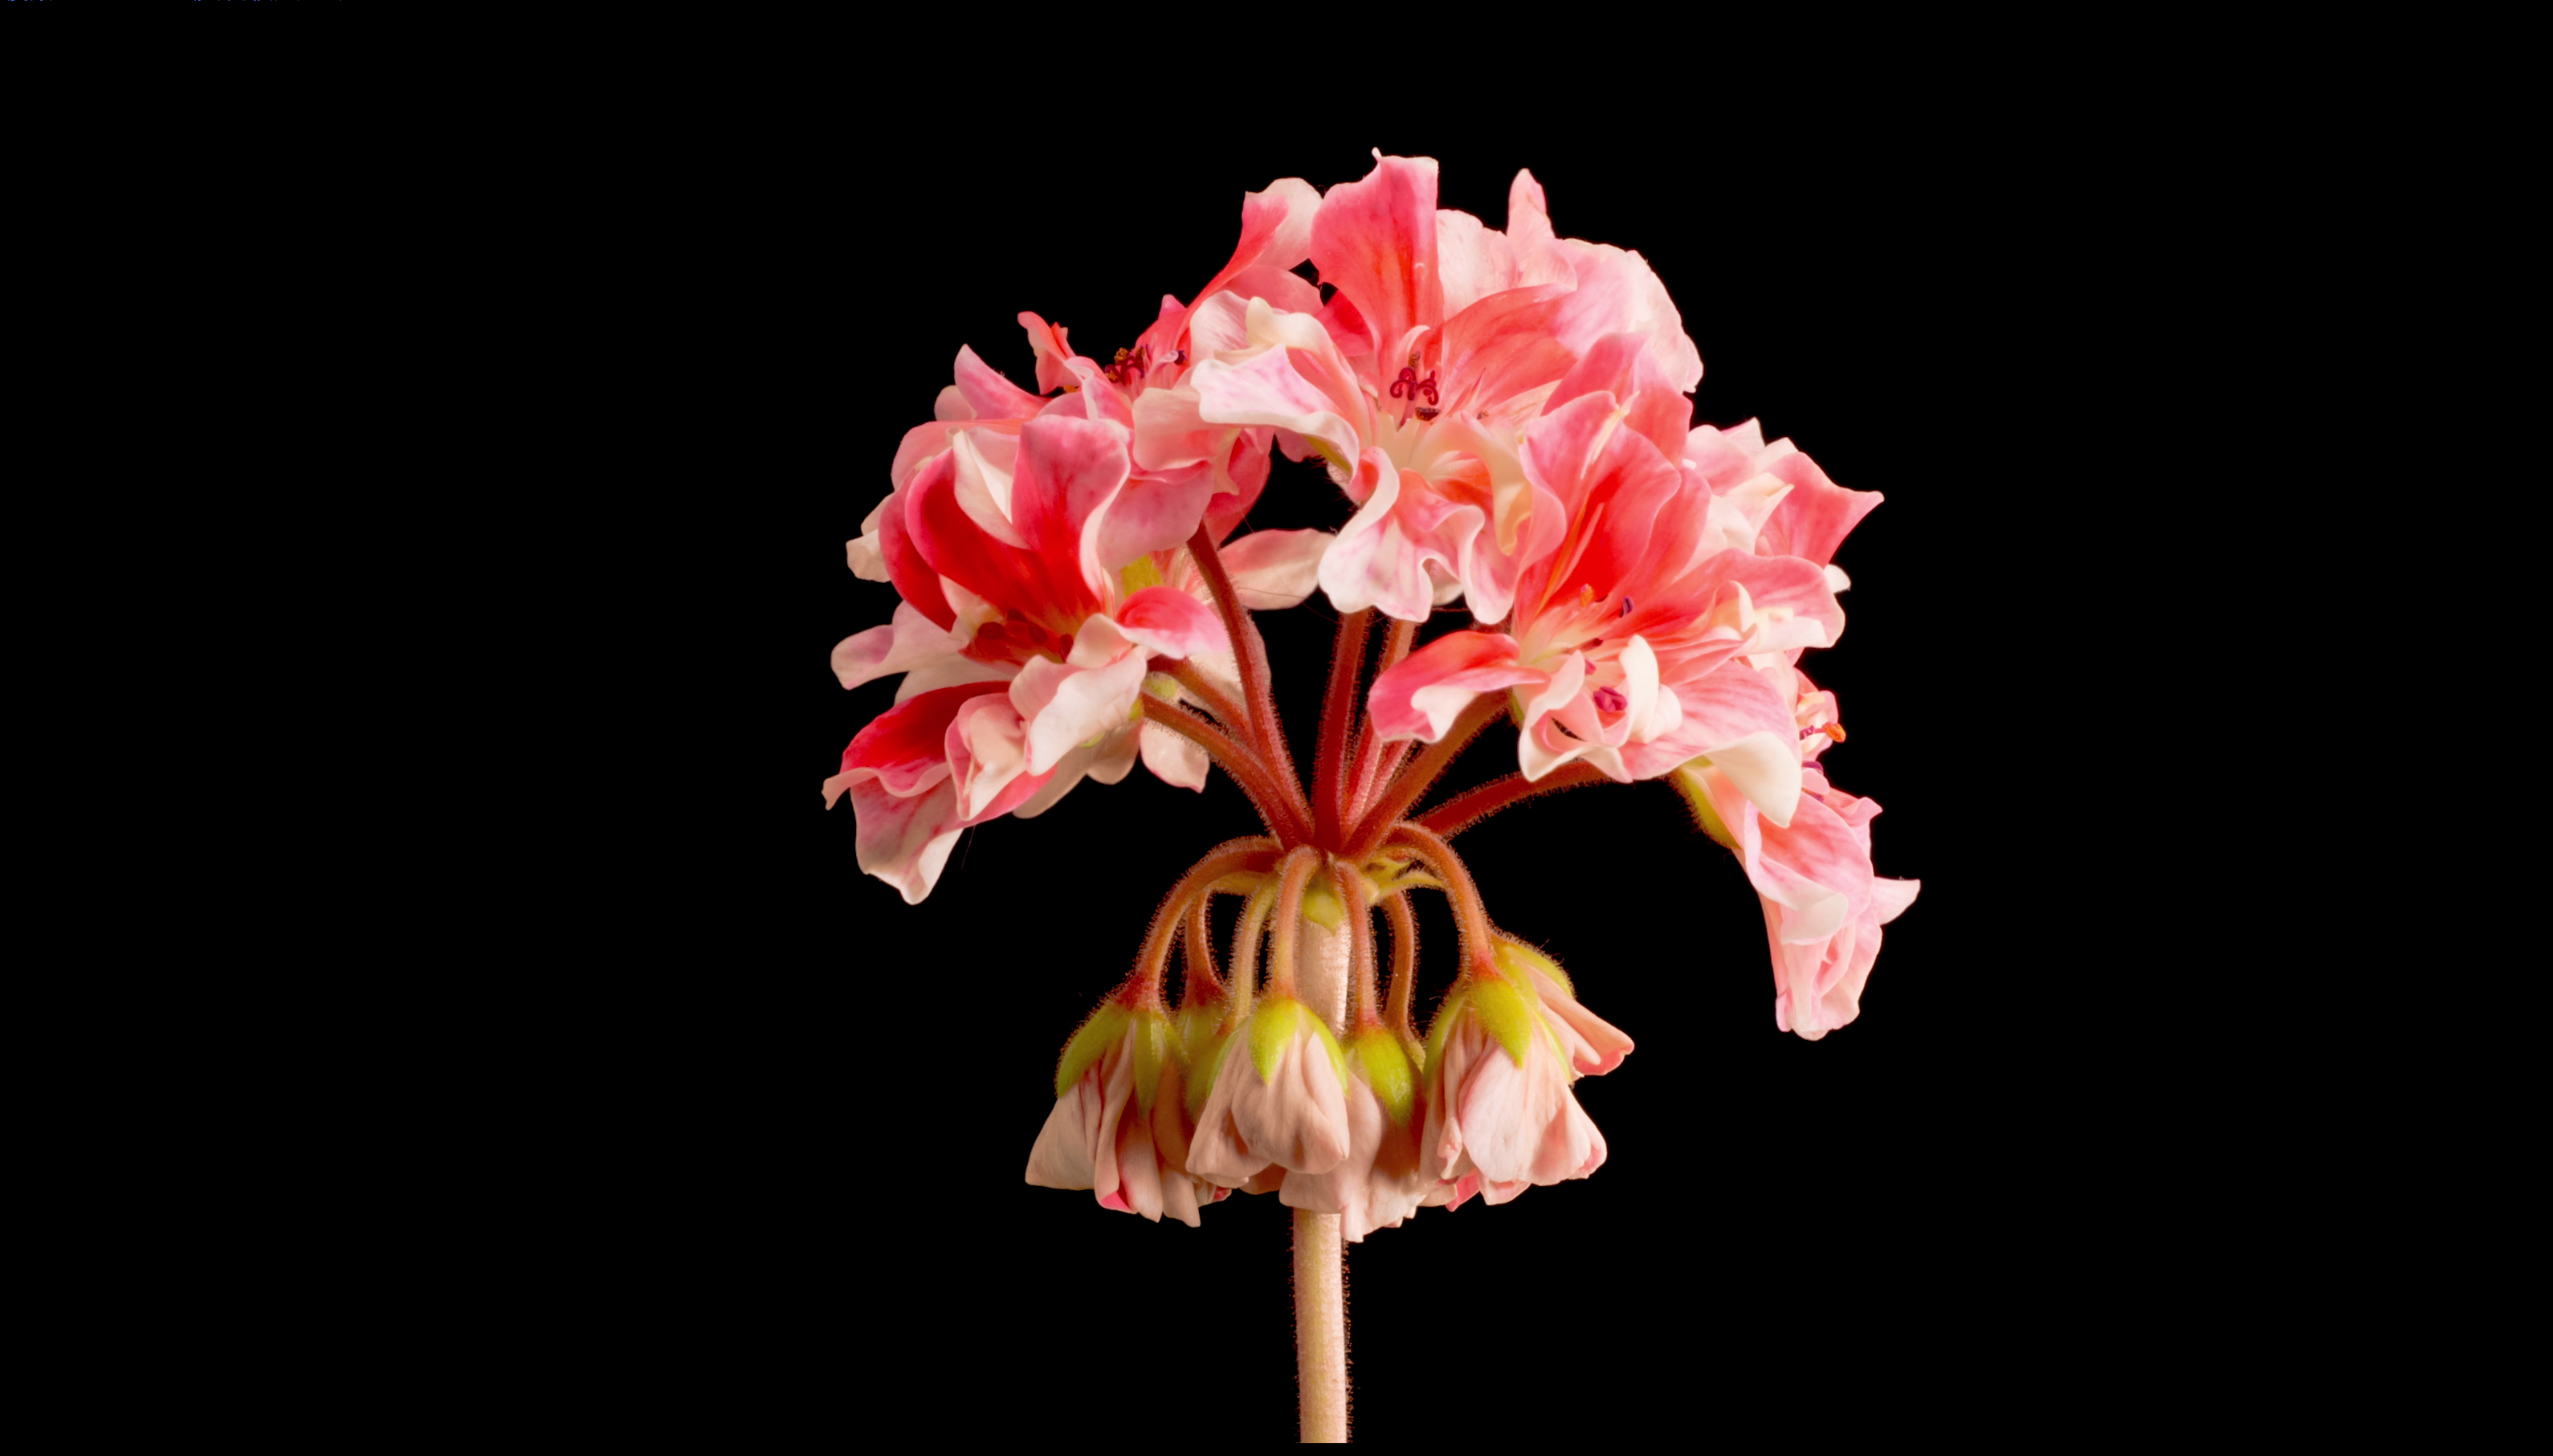 世界上最大的花卉系列8K ULTRA HD-配有舒缓的音乐 Largest FLOWERS Collection in the World 8K ULTRA HD - ...